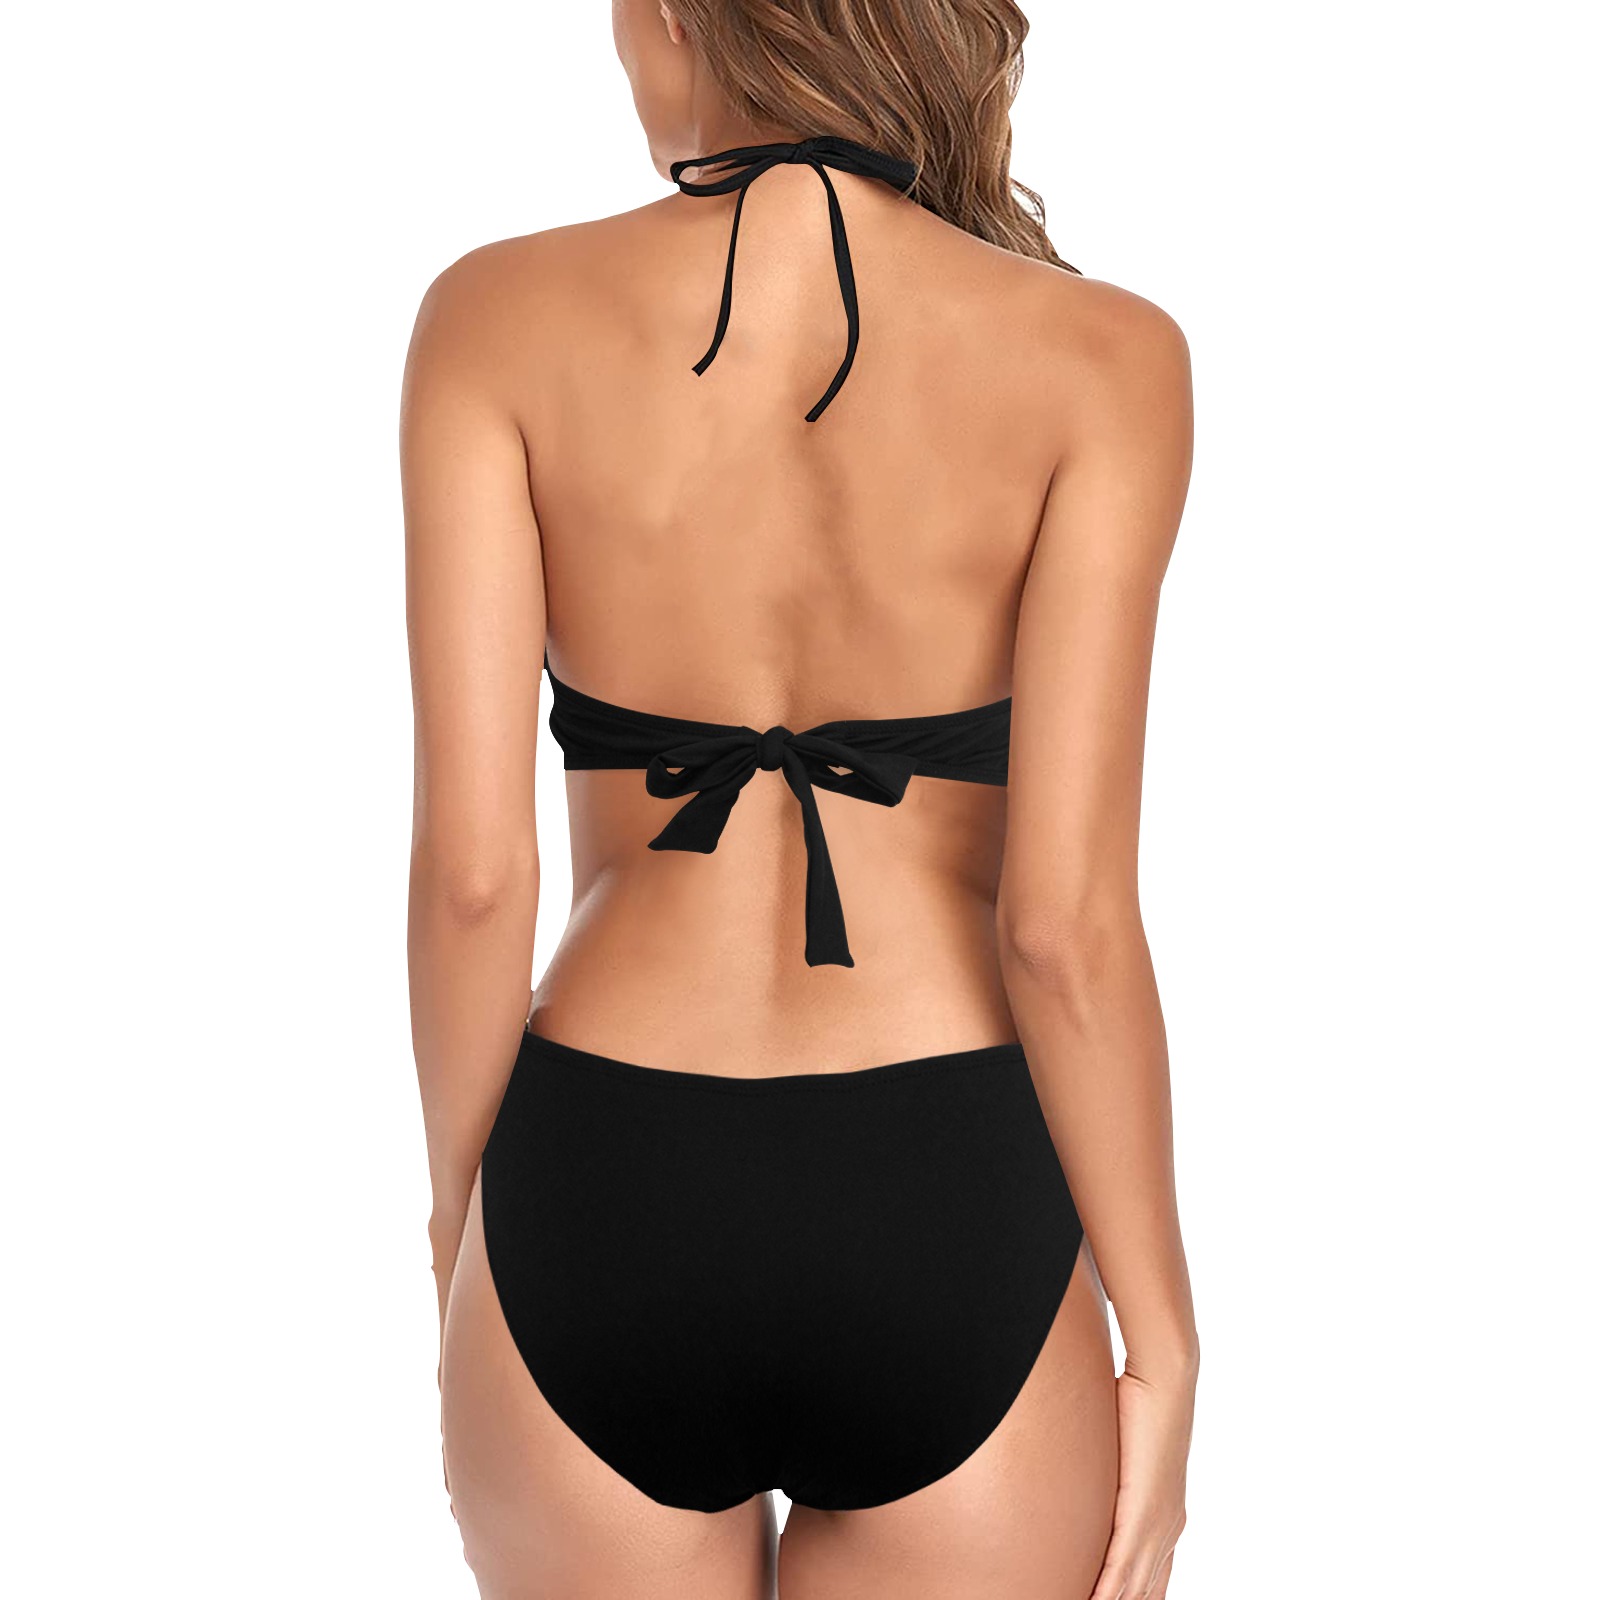 Black fringed swimsuit Women's Fringe Swimsuit (Model S32)